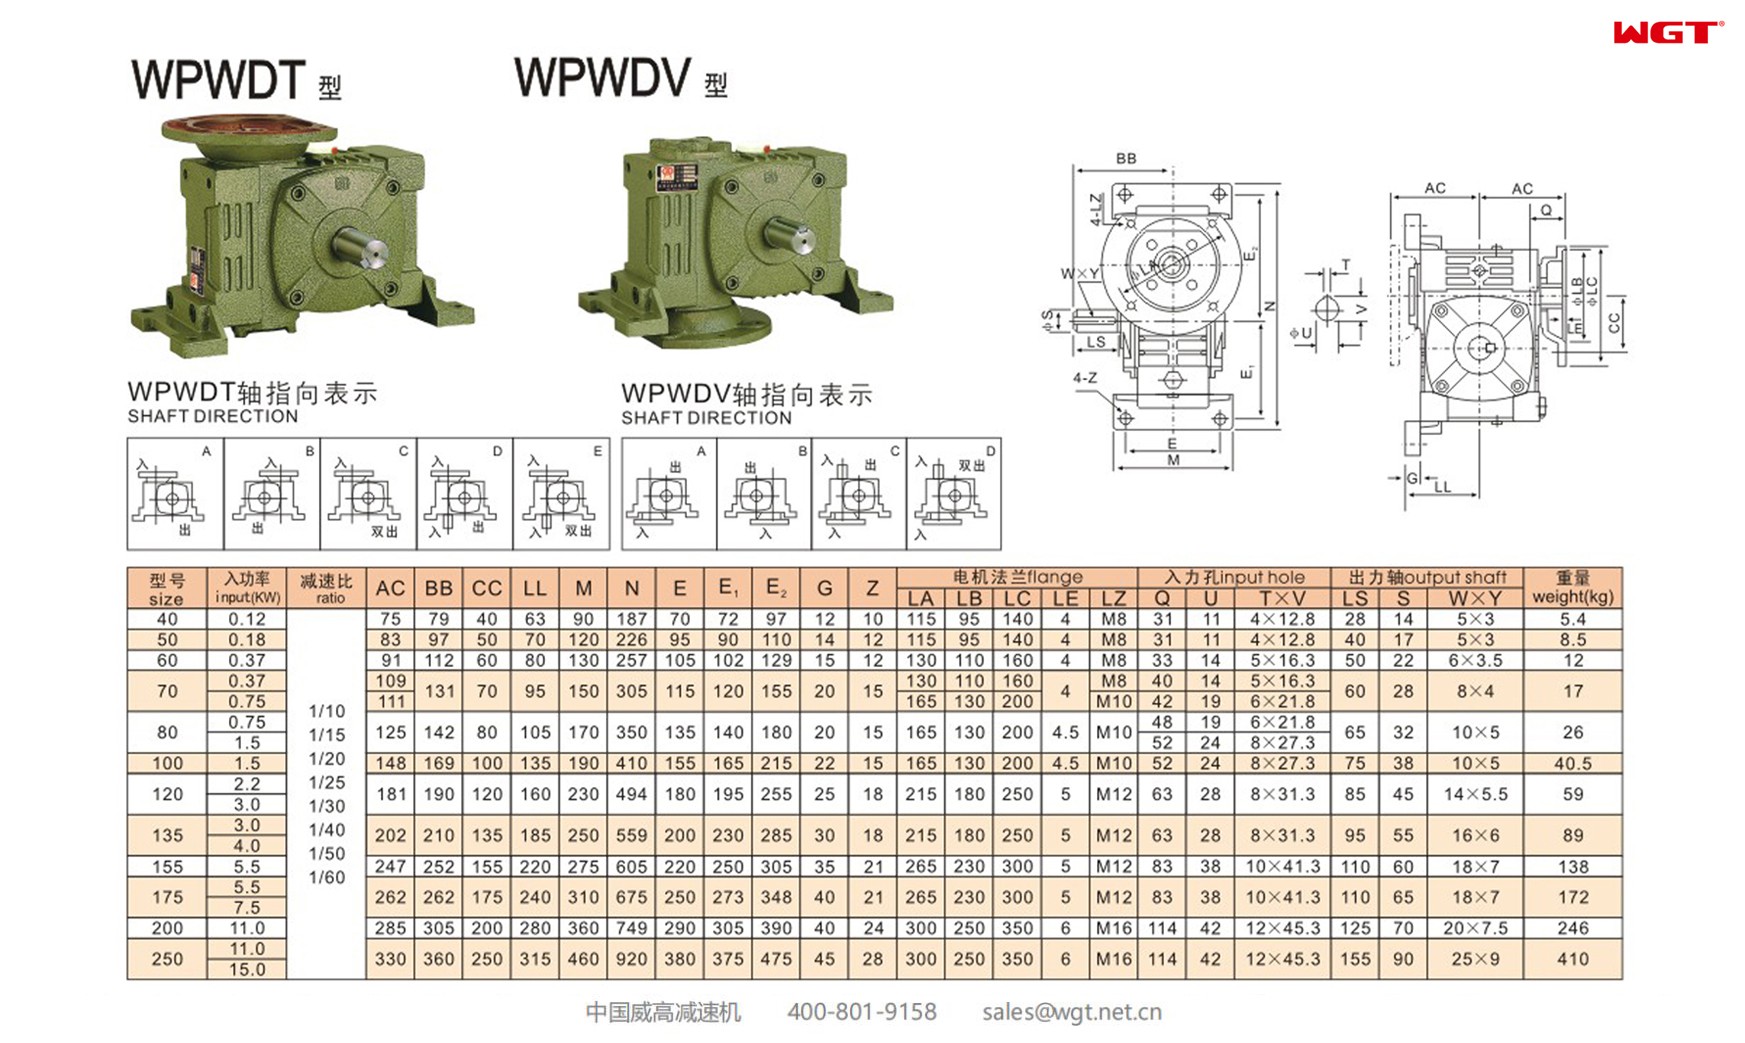 WPWDT120 worm gear reducer universal speed reducer